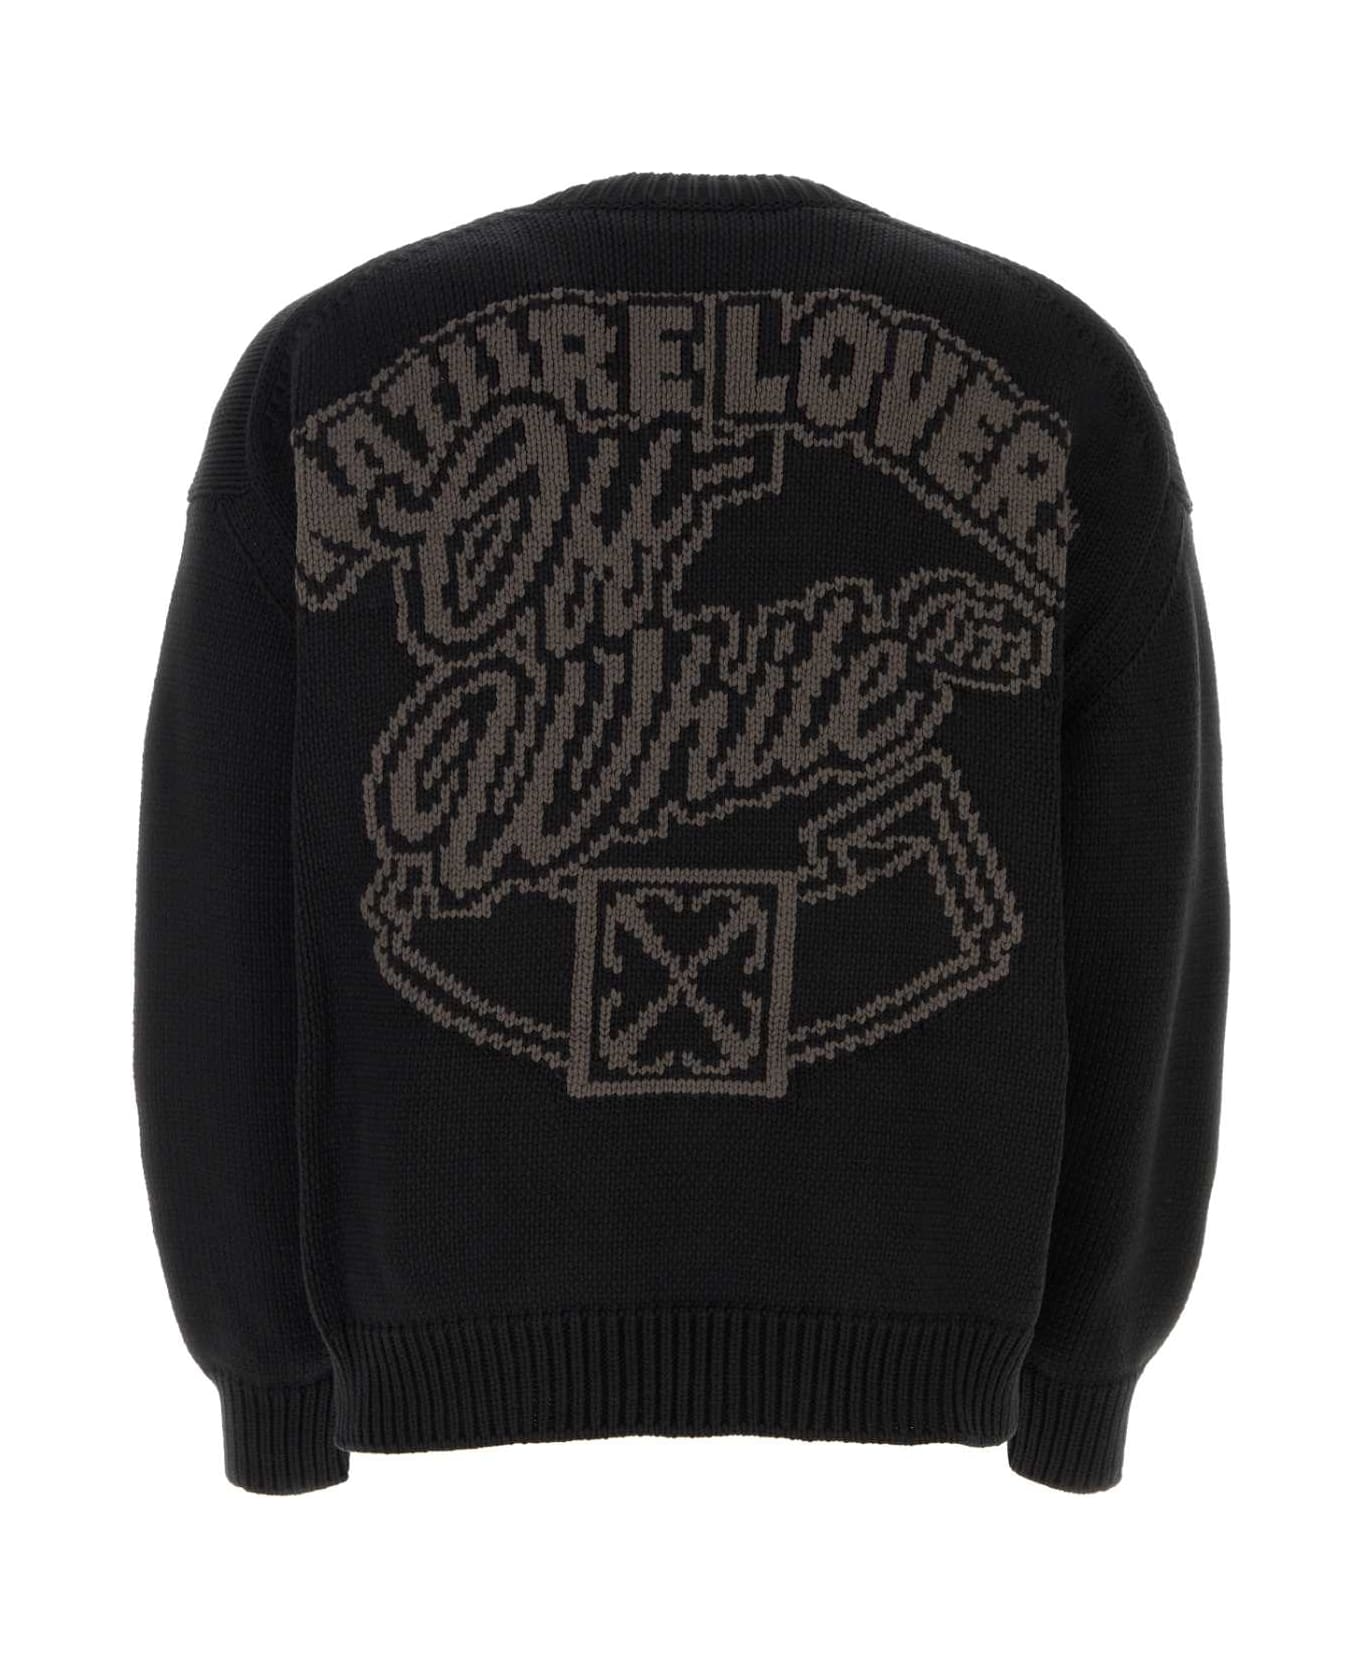 Off-White Black Cotton Blend Oversize Sweater - 1009 ニットウェア